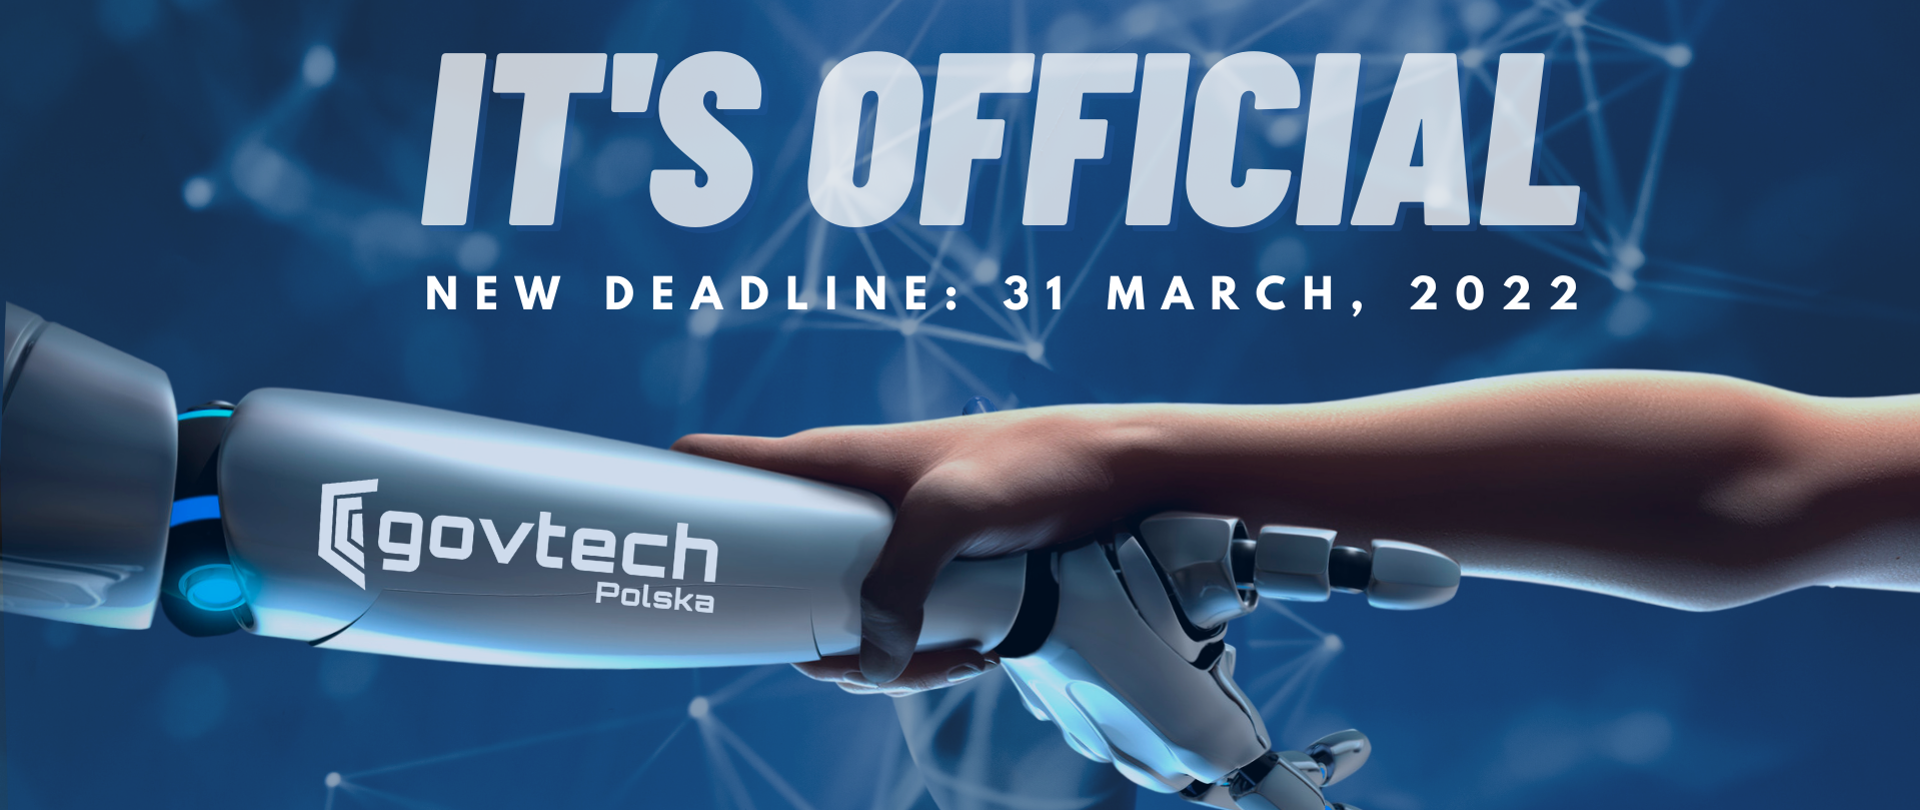 To oficjalne, nowy deadline międzynarodowego konkursu esejoweo to 31 marca 2022. Ręka trzymająca rękę robota z logotypem Centrum GovTech.